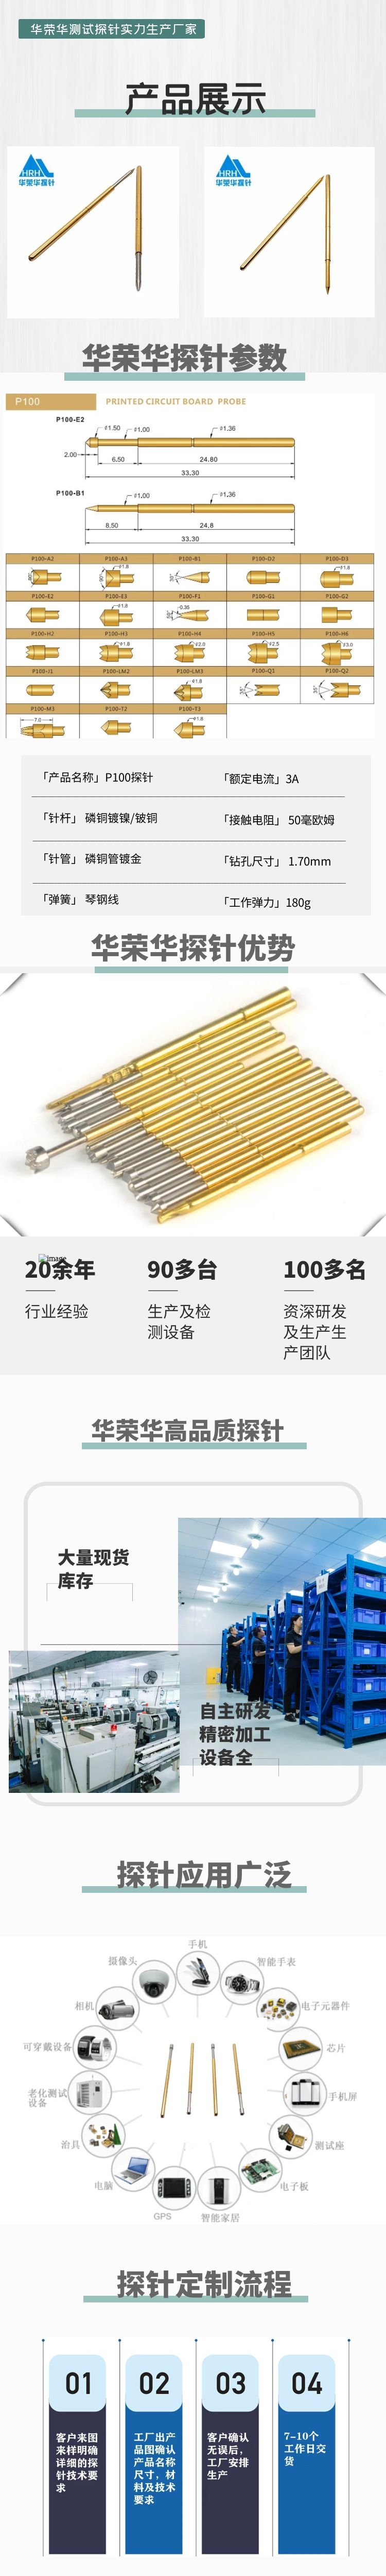 华荣华P100-B测试探针厂家